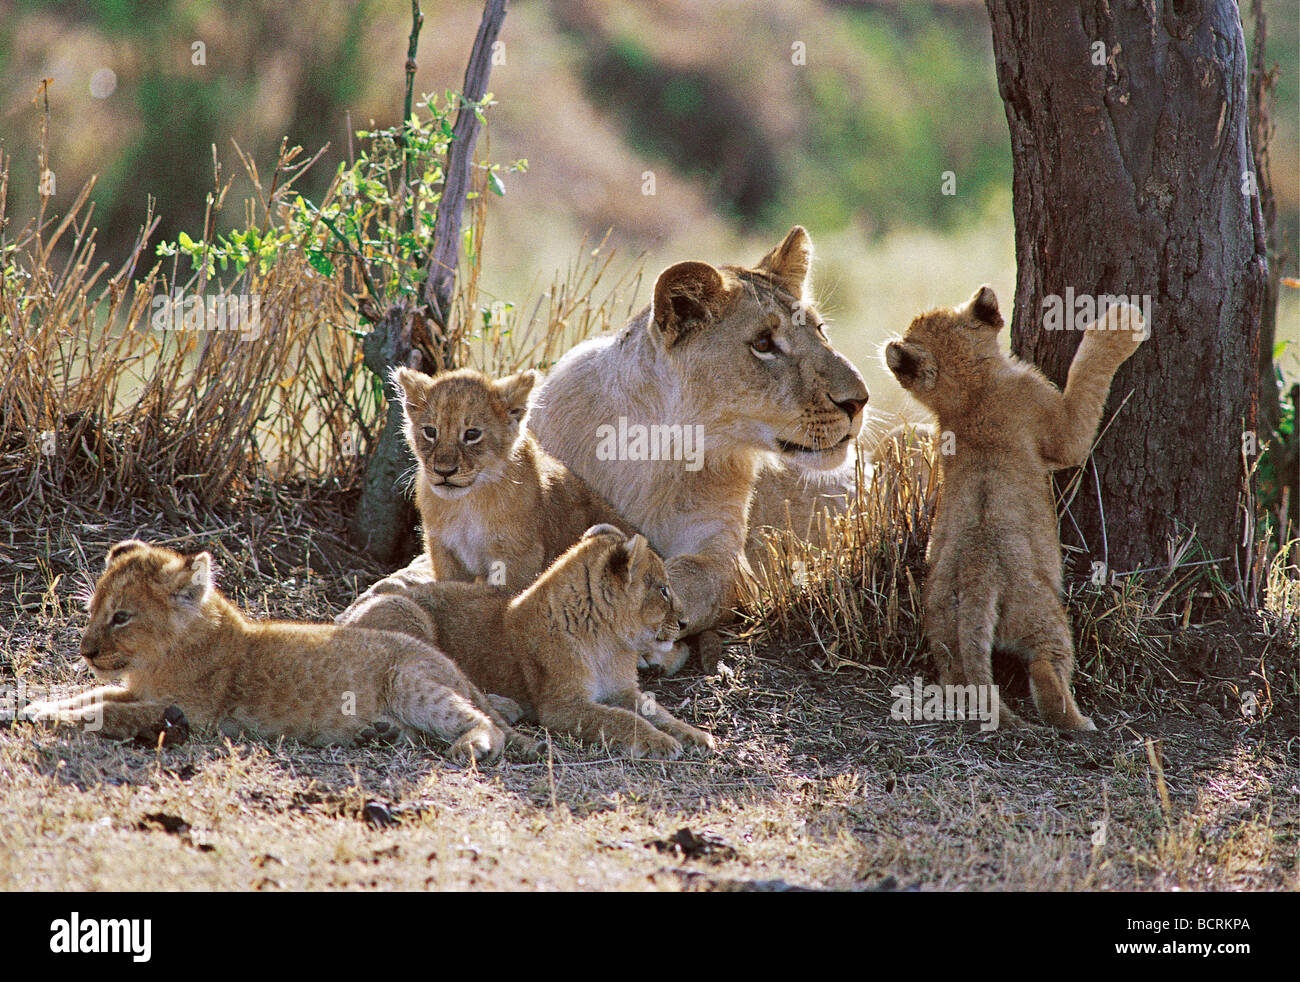 Giovane maschio lion sette mesi di socializzare con quattro giovani cubs Masai Mara riserva nazionale del Kenya Africa orientale Foto Stock